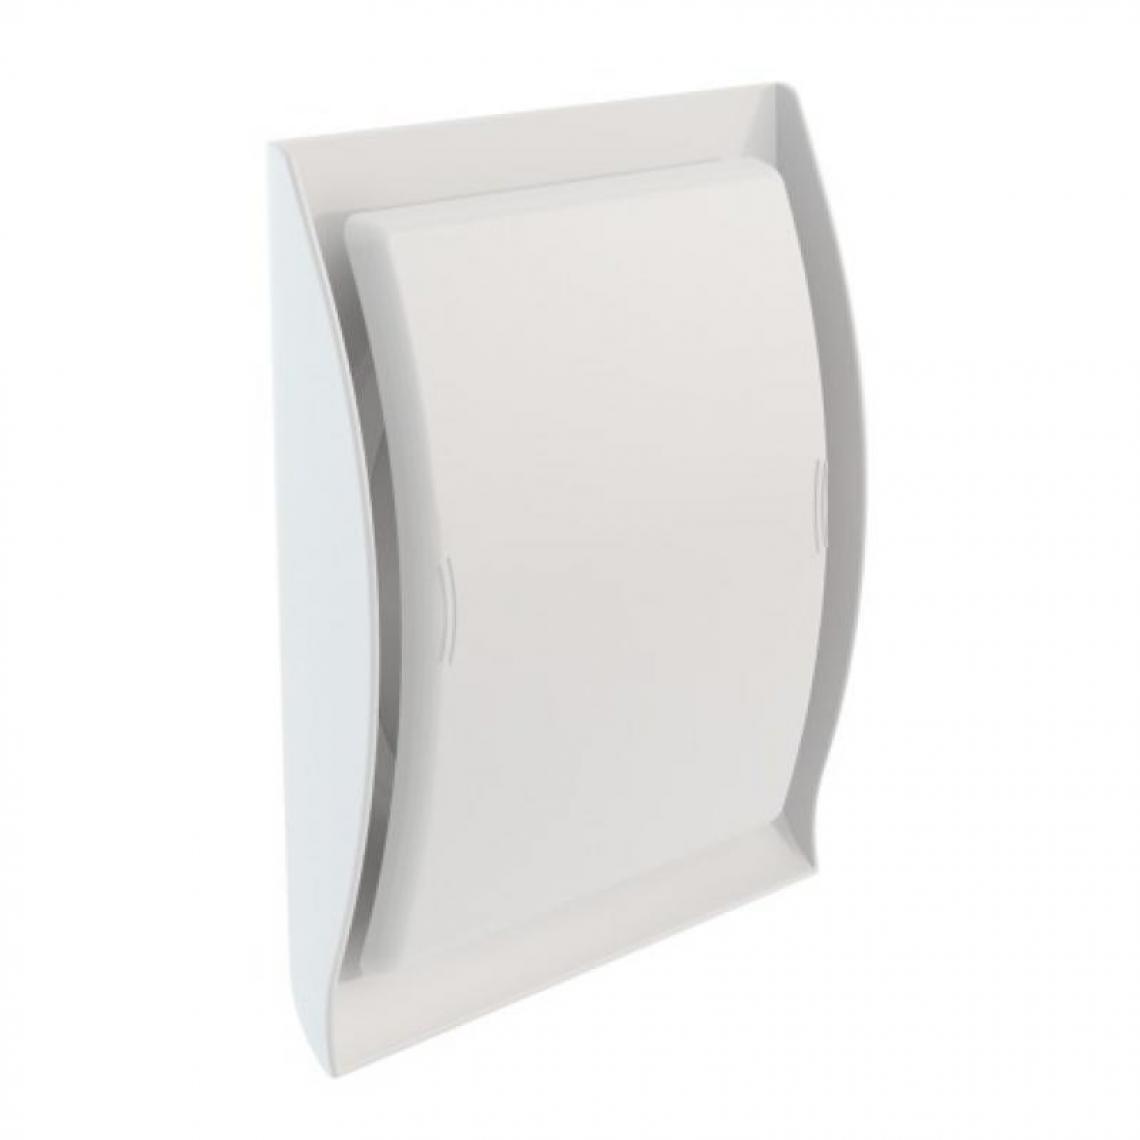 Nicoll - Grille de ventilation intérieure type Néolia pour gaine de Ø 125 mm coloris blanc - VMC, Ventilation